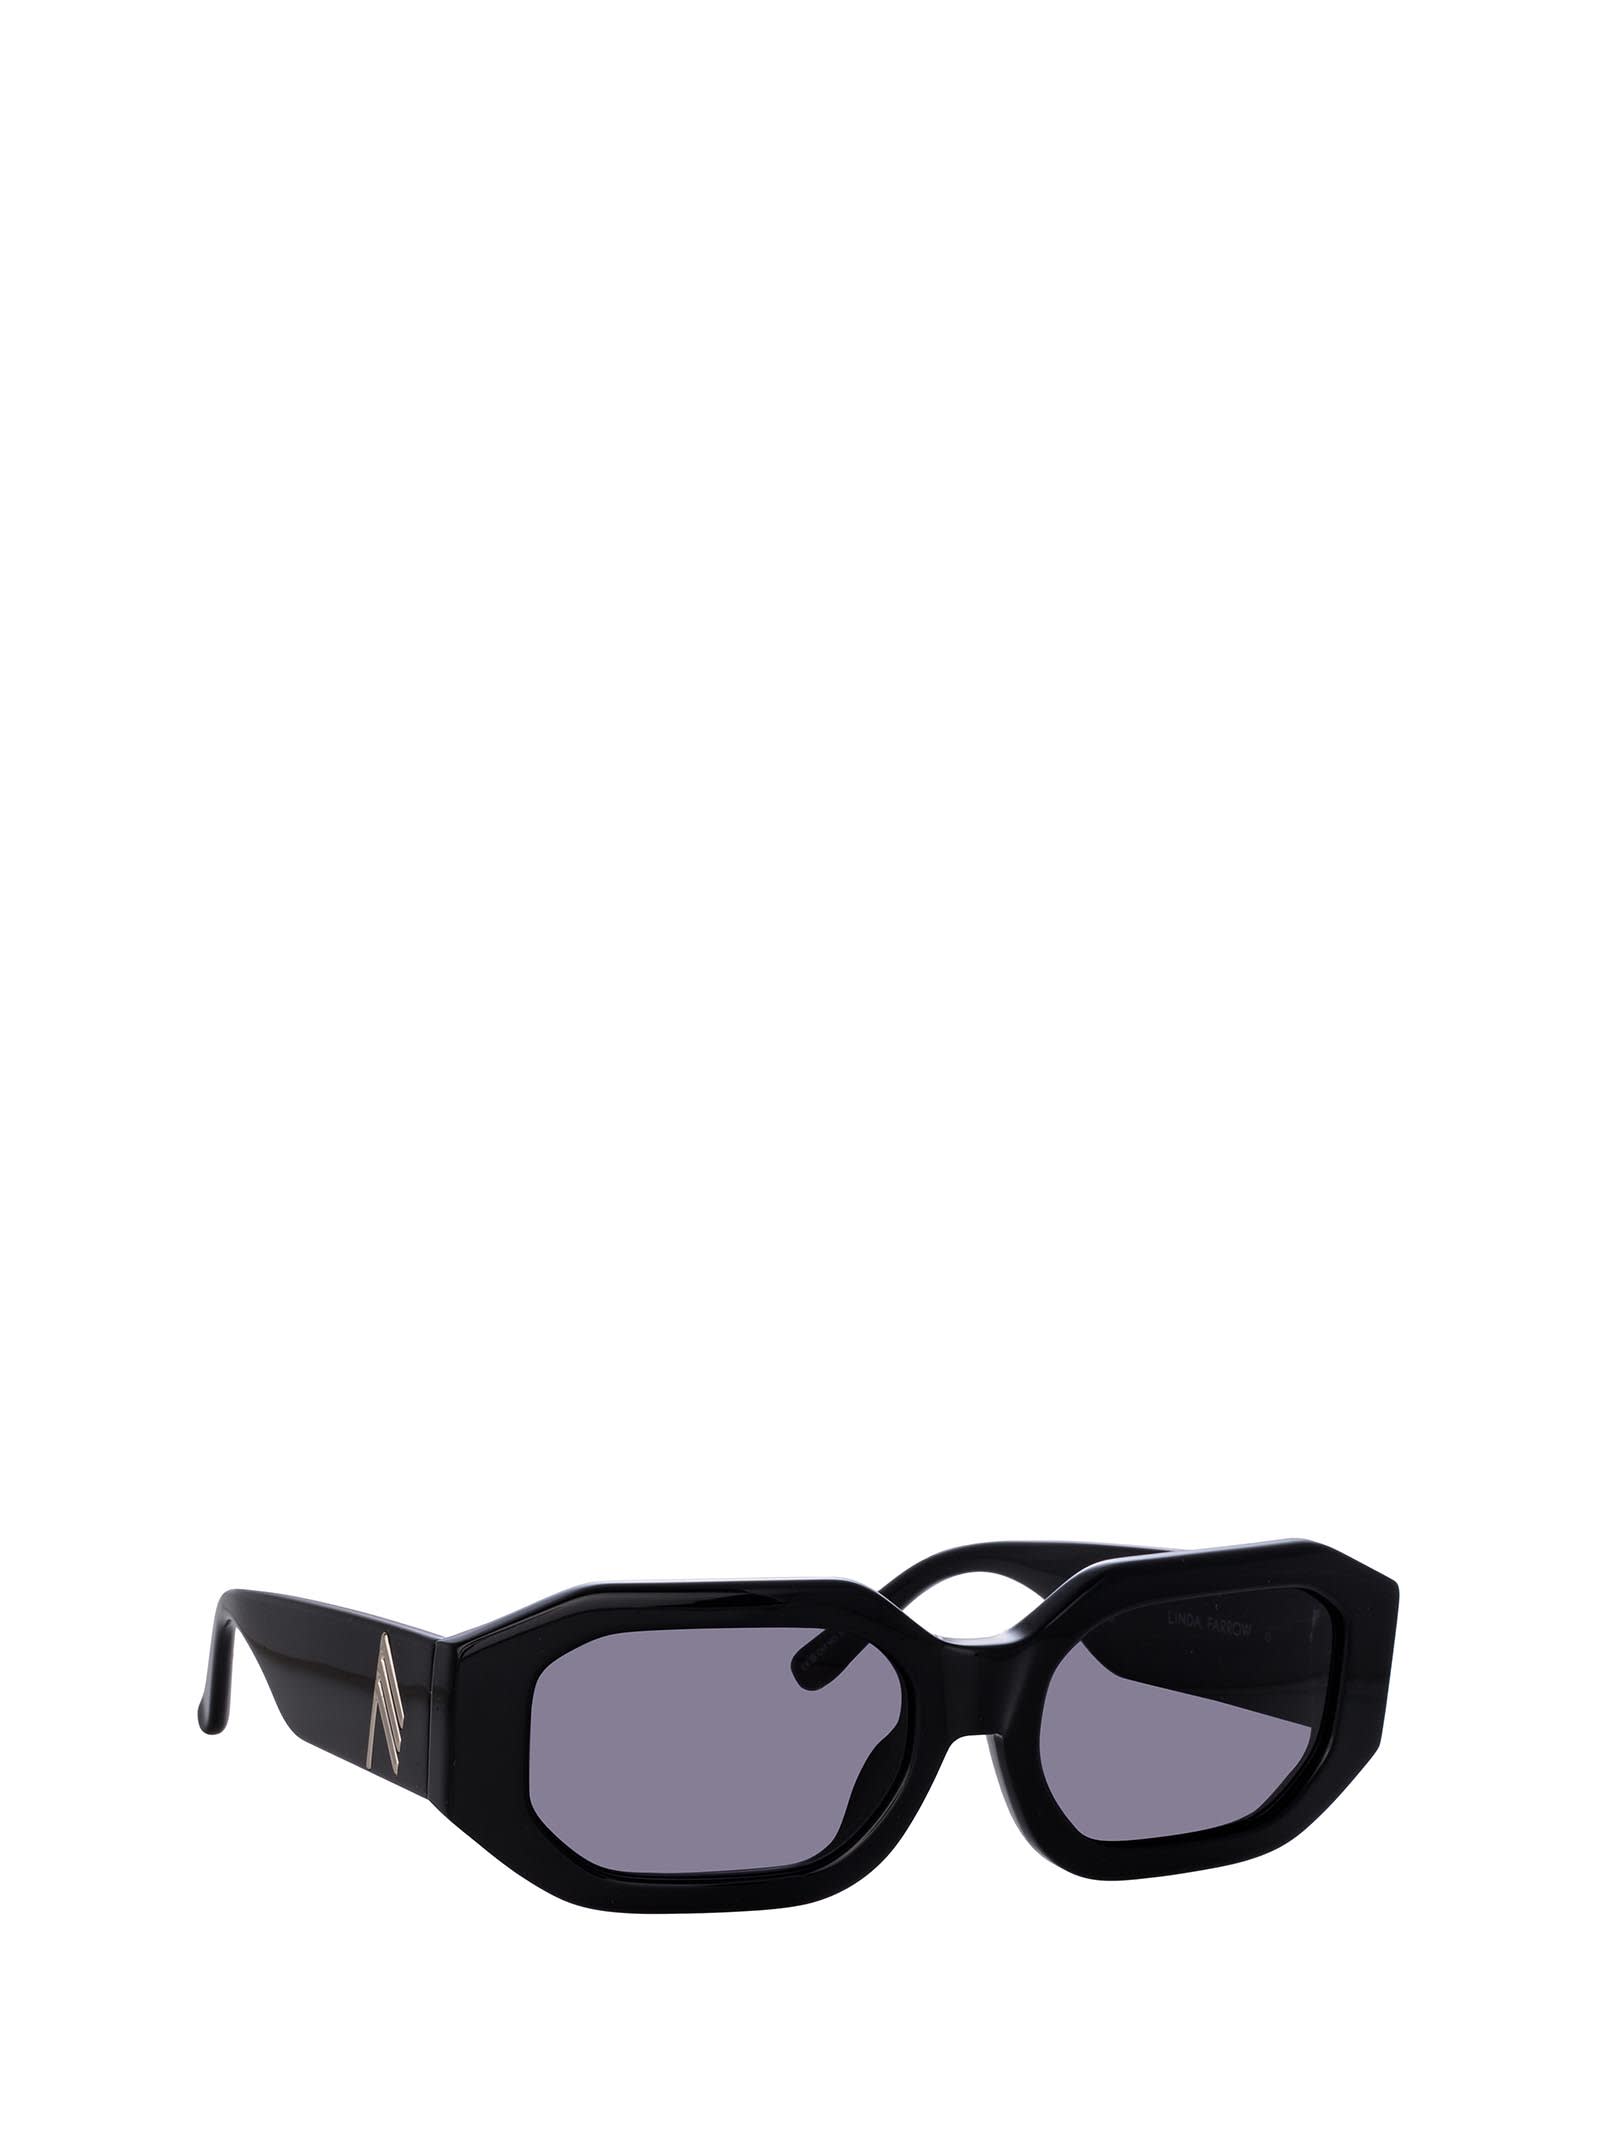 Shop Linda Farrow Attico45 Black / Silver Sunglasses